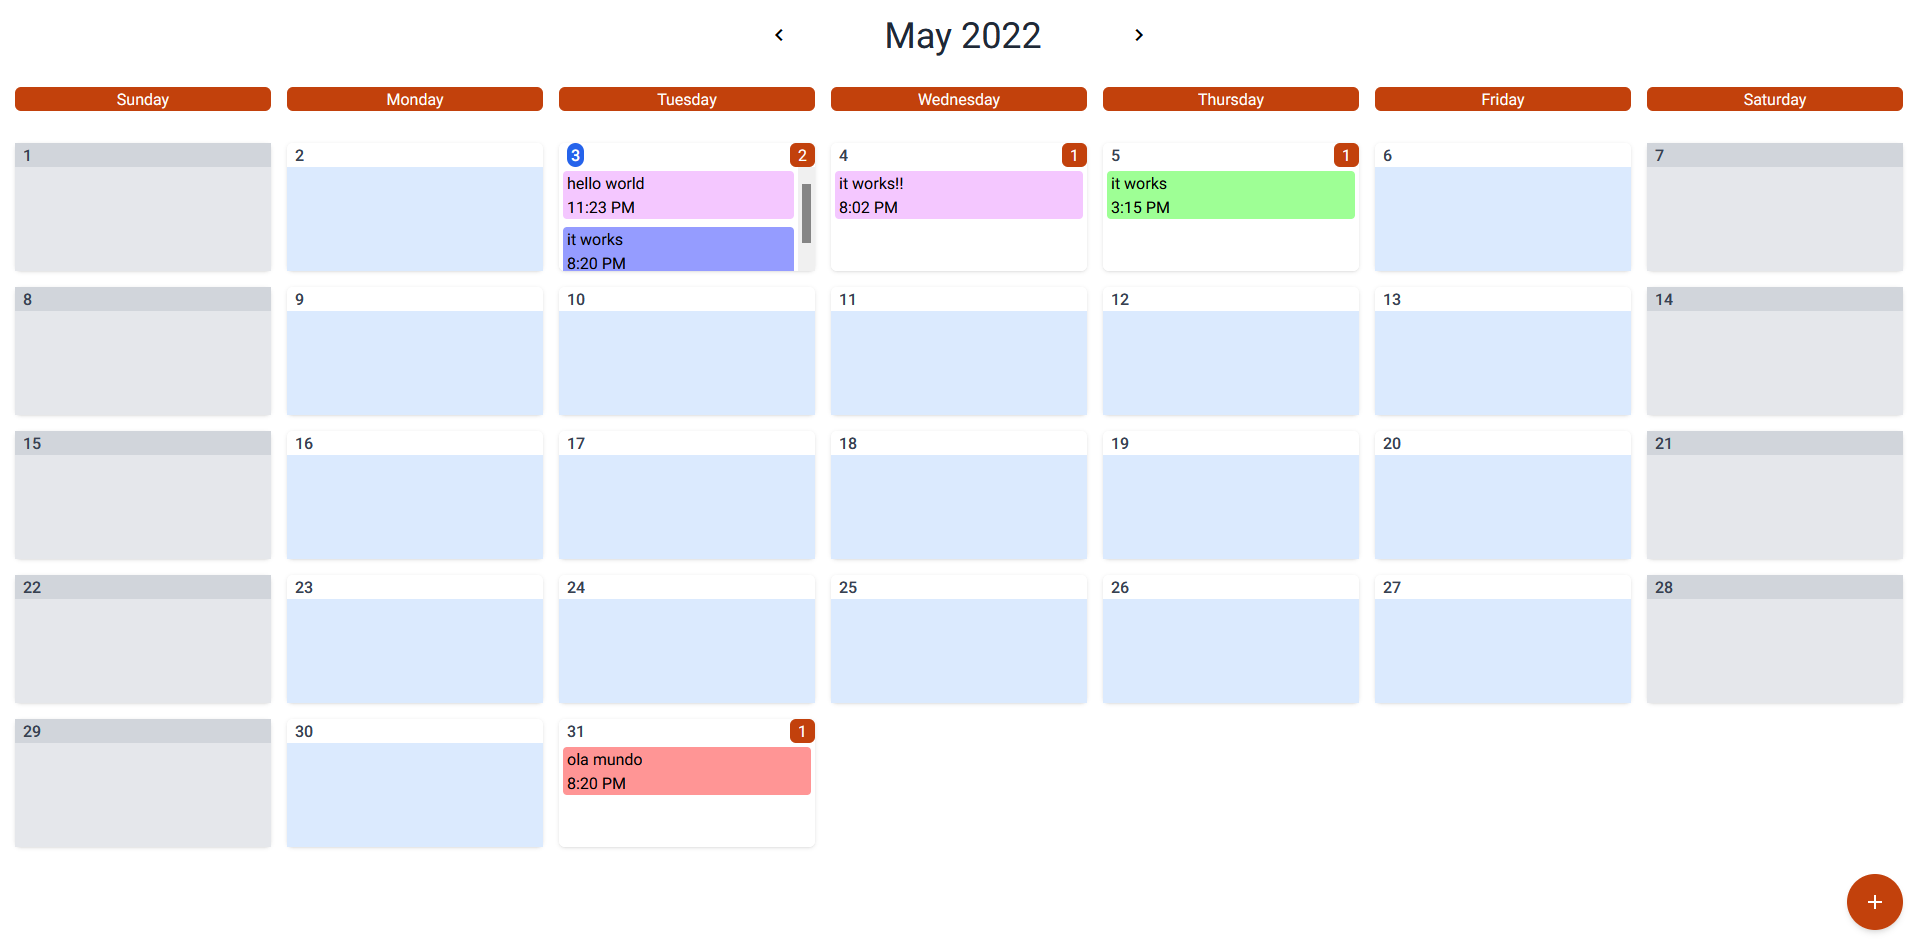 GitHub Rodolfho7/angularcalendar An calendar(google calendar) made